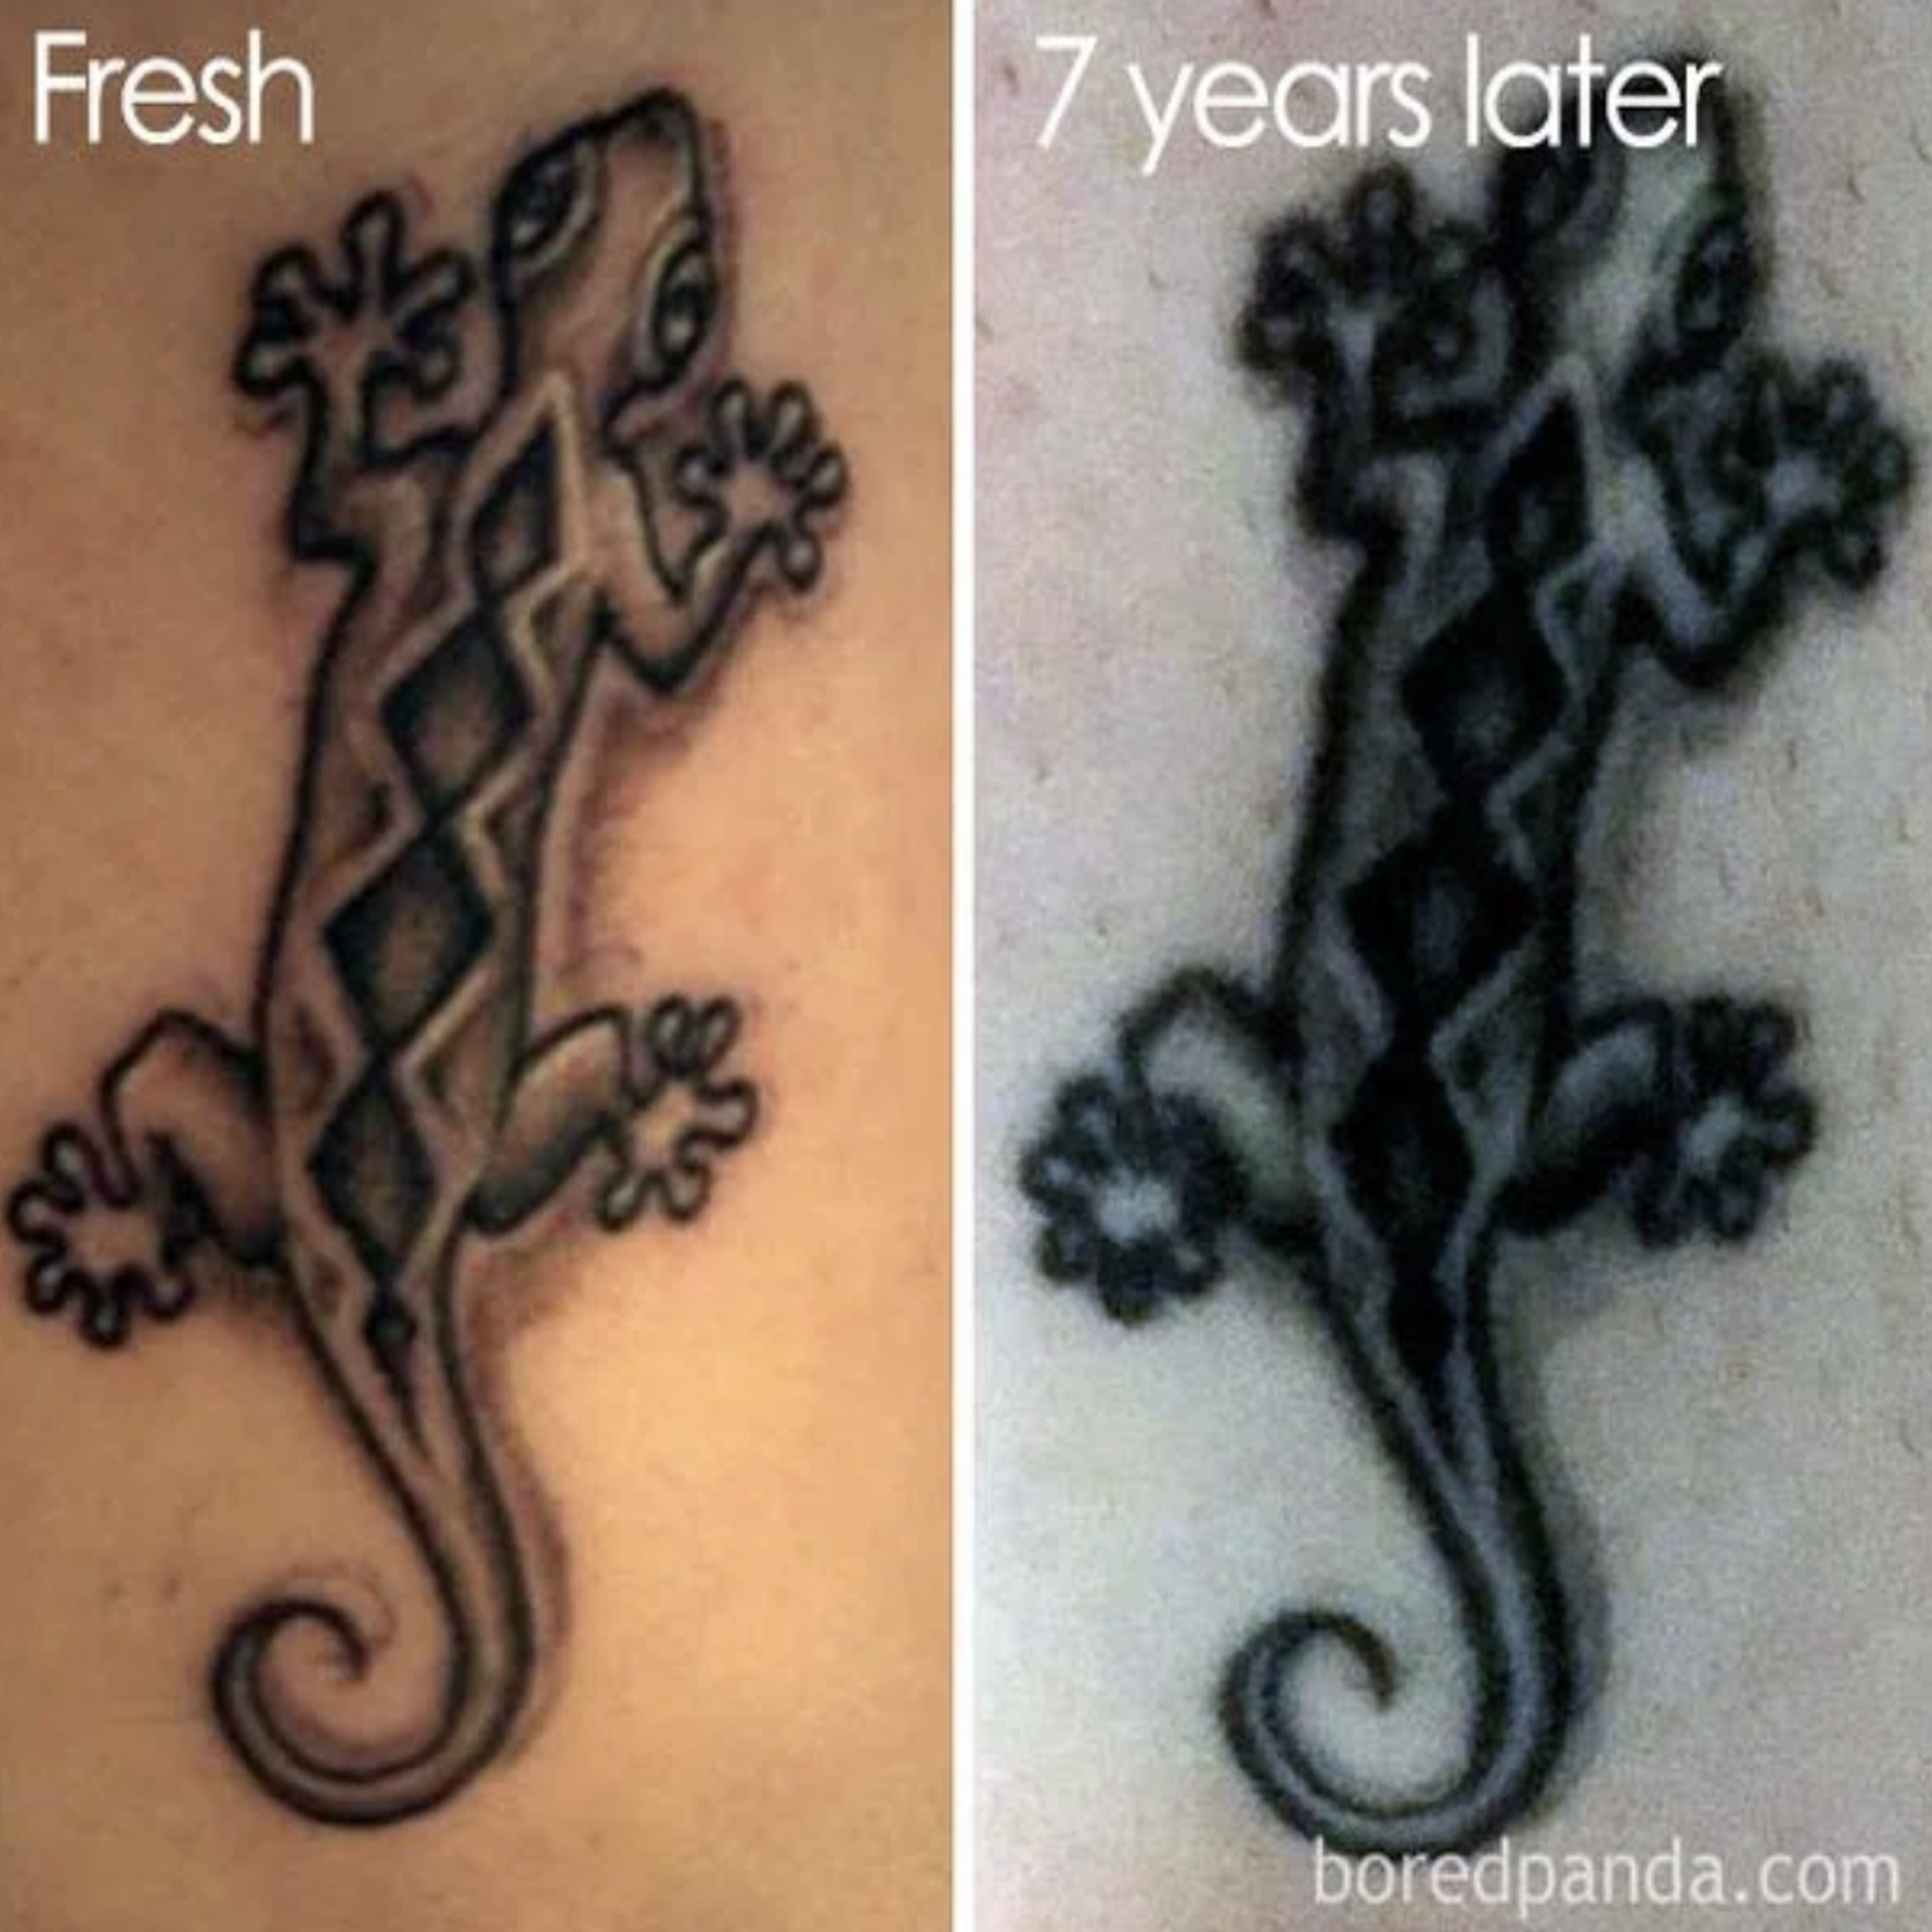 Zbyt mały tatuaż względem szczegółów, rozlanie tatuażu